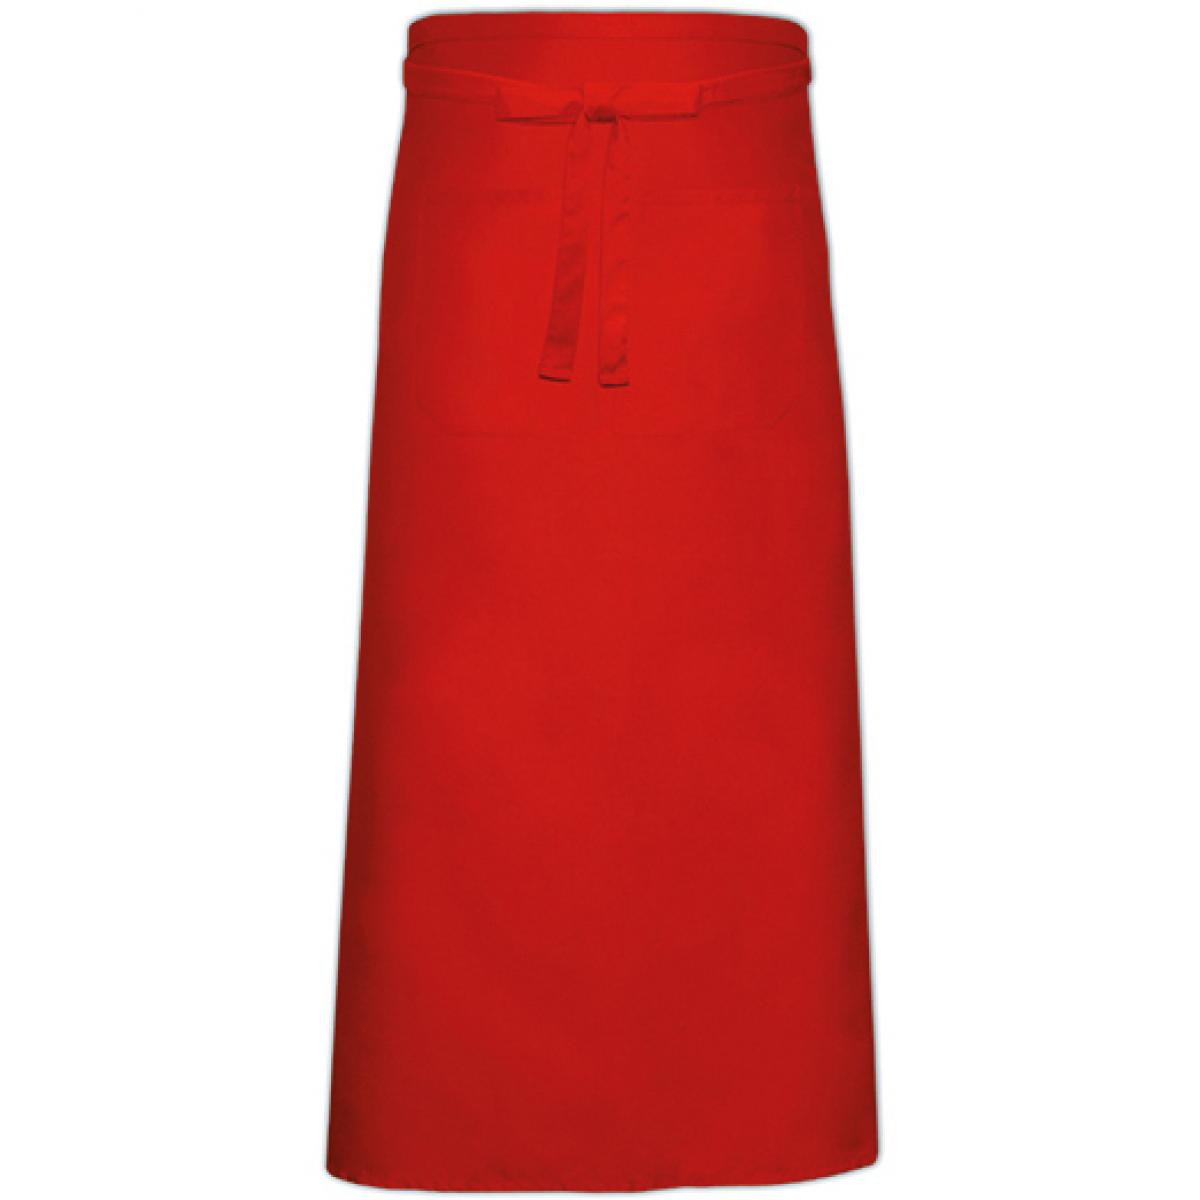 Hersteller: Link Kitchen Wear Herstellernummer: FS100120 Z Artikelbezeichnung: Bistro Apron XL with Front Pocket - 120 x 100 cm Farbe: Red